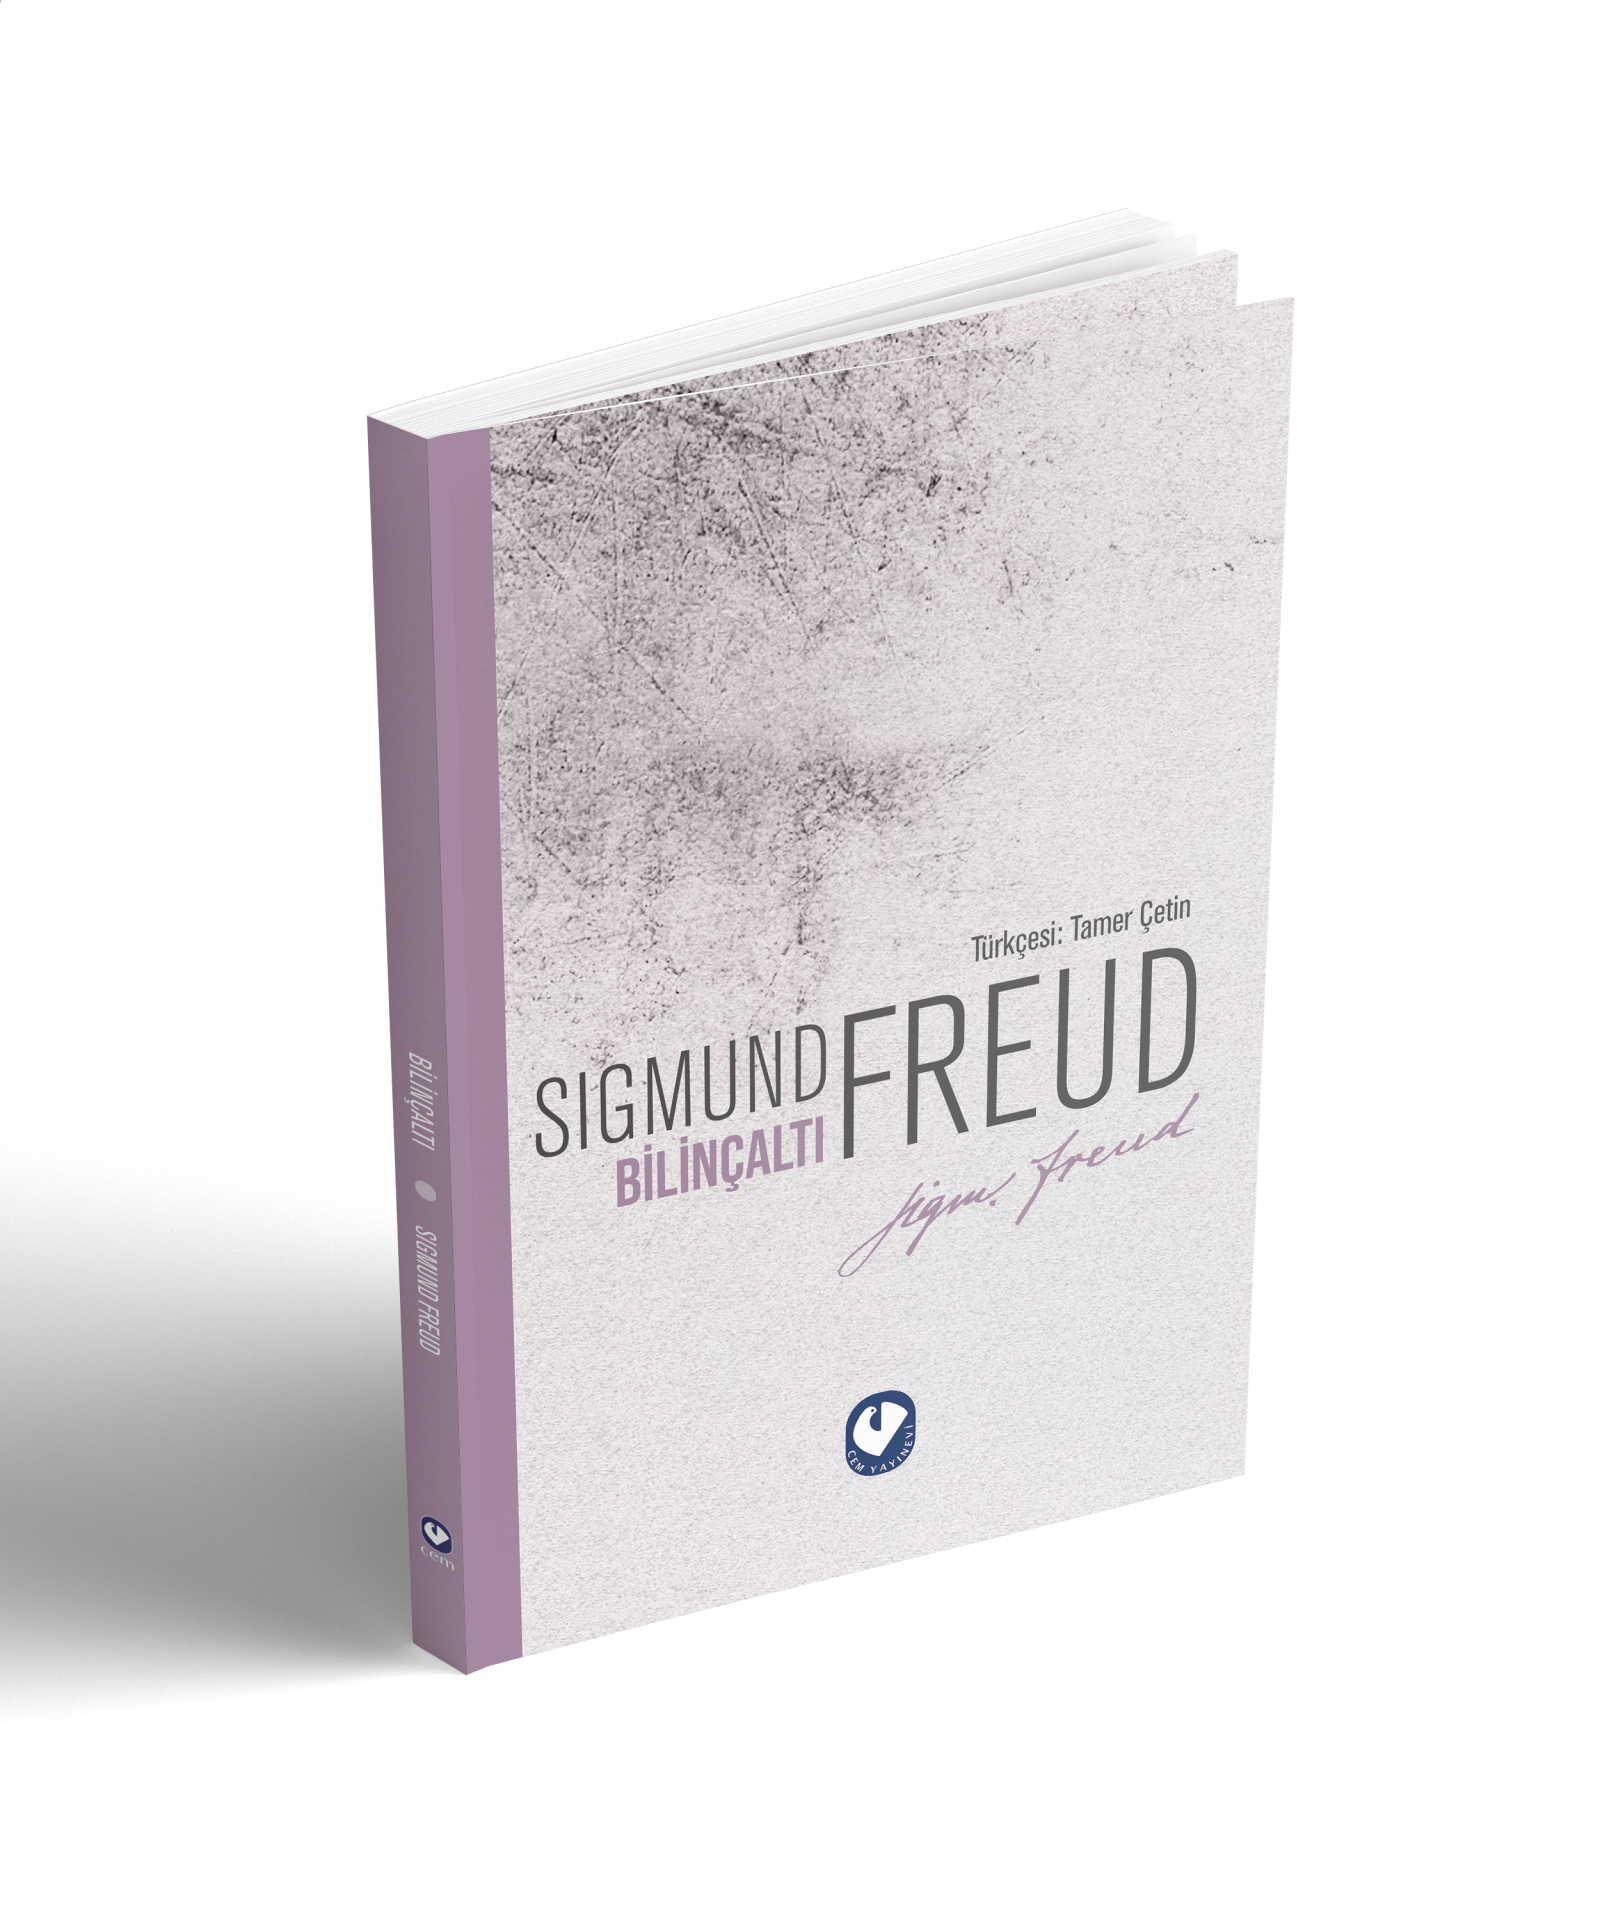 Bilinçaltı ﻿Sigmund Freud